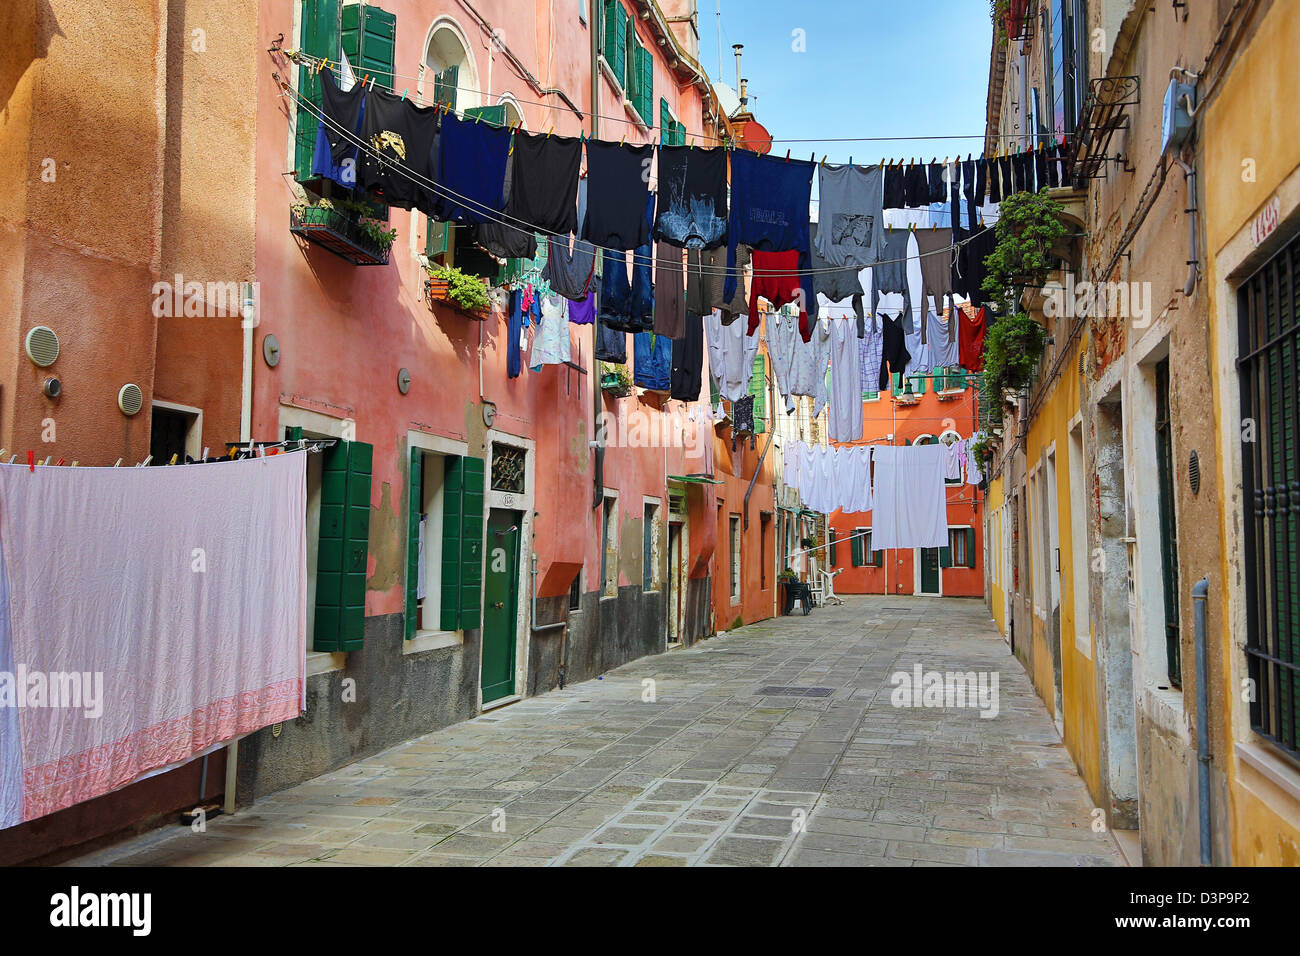 Le séchage des vêtements en train de sécher dehors sur une ligne de lavage dans une rue à lessive à Venise, Italie Banque D'Images